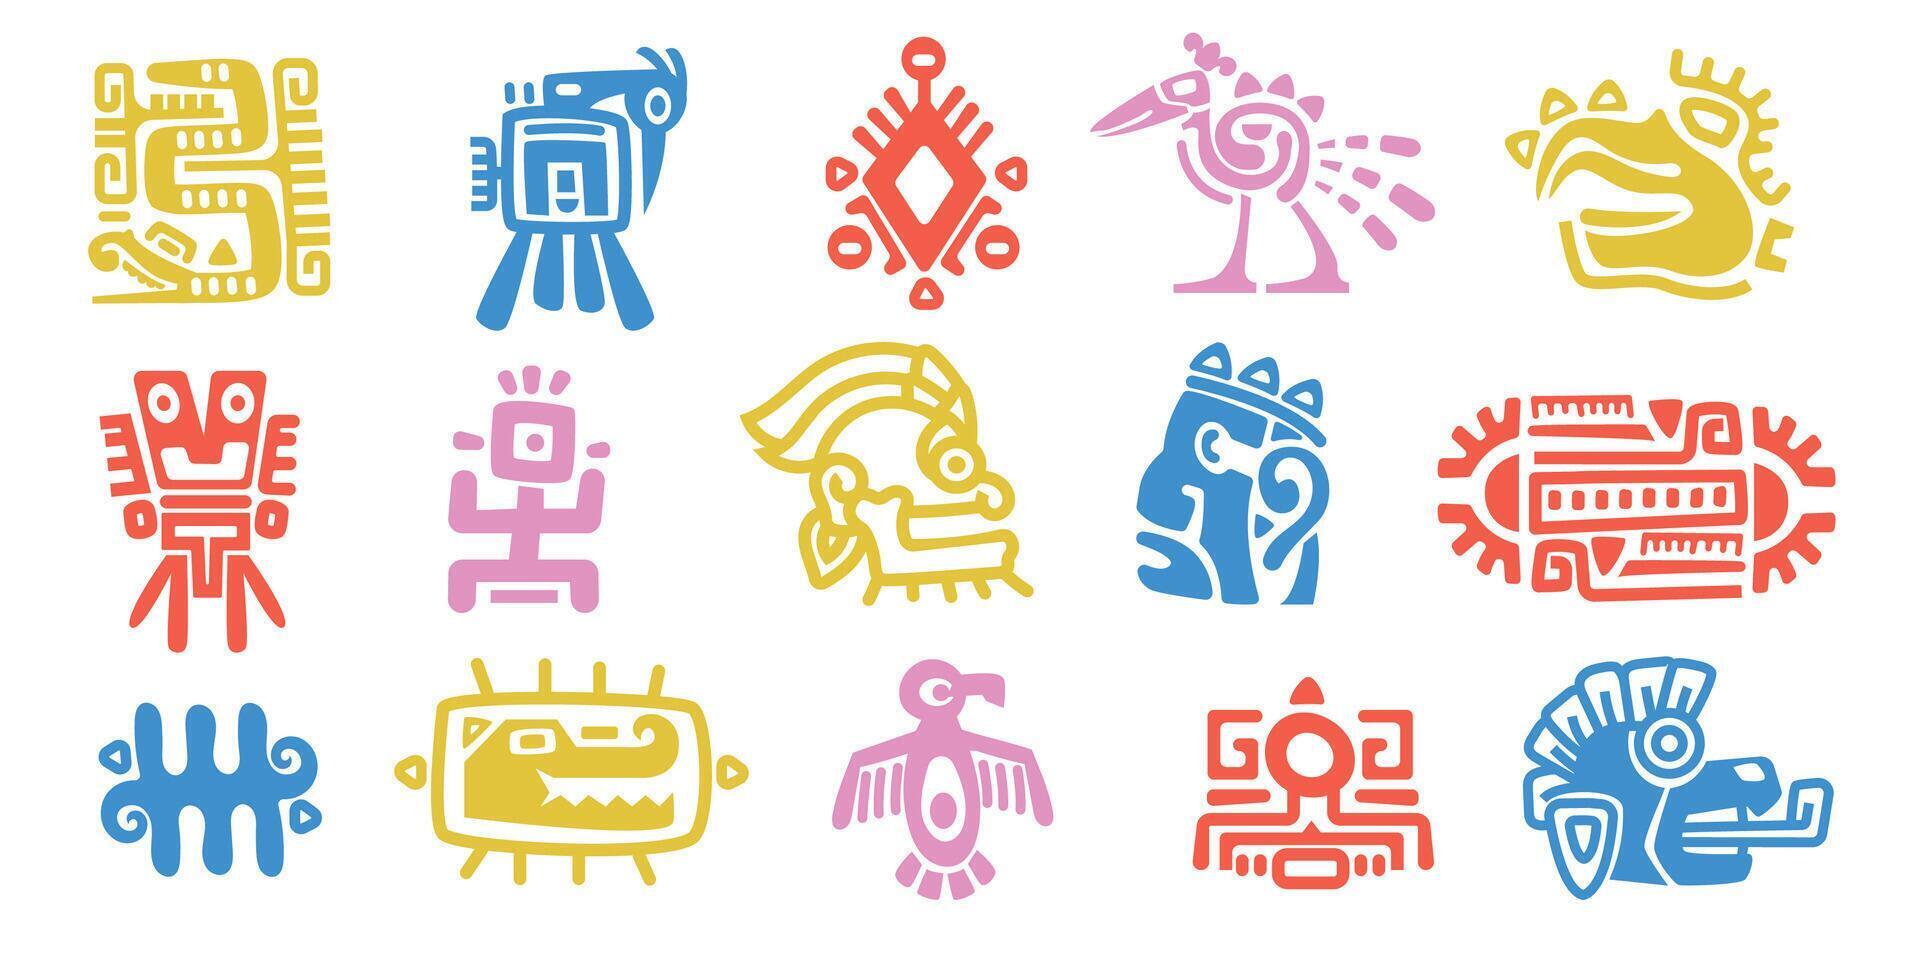 mayan djur- totem. gammal maya aztec inföding mytologi symboler, traditionell gammal mexikansk inhemsk ritual monster tecken. vektor färgrik uppsättning